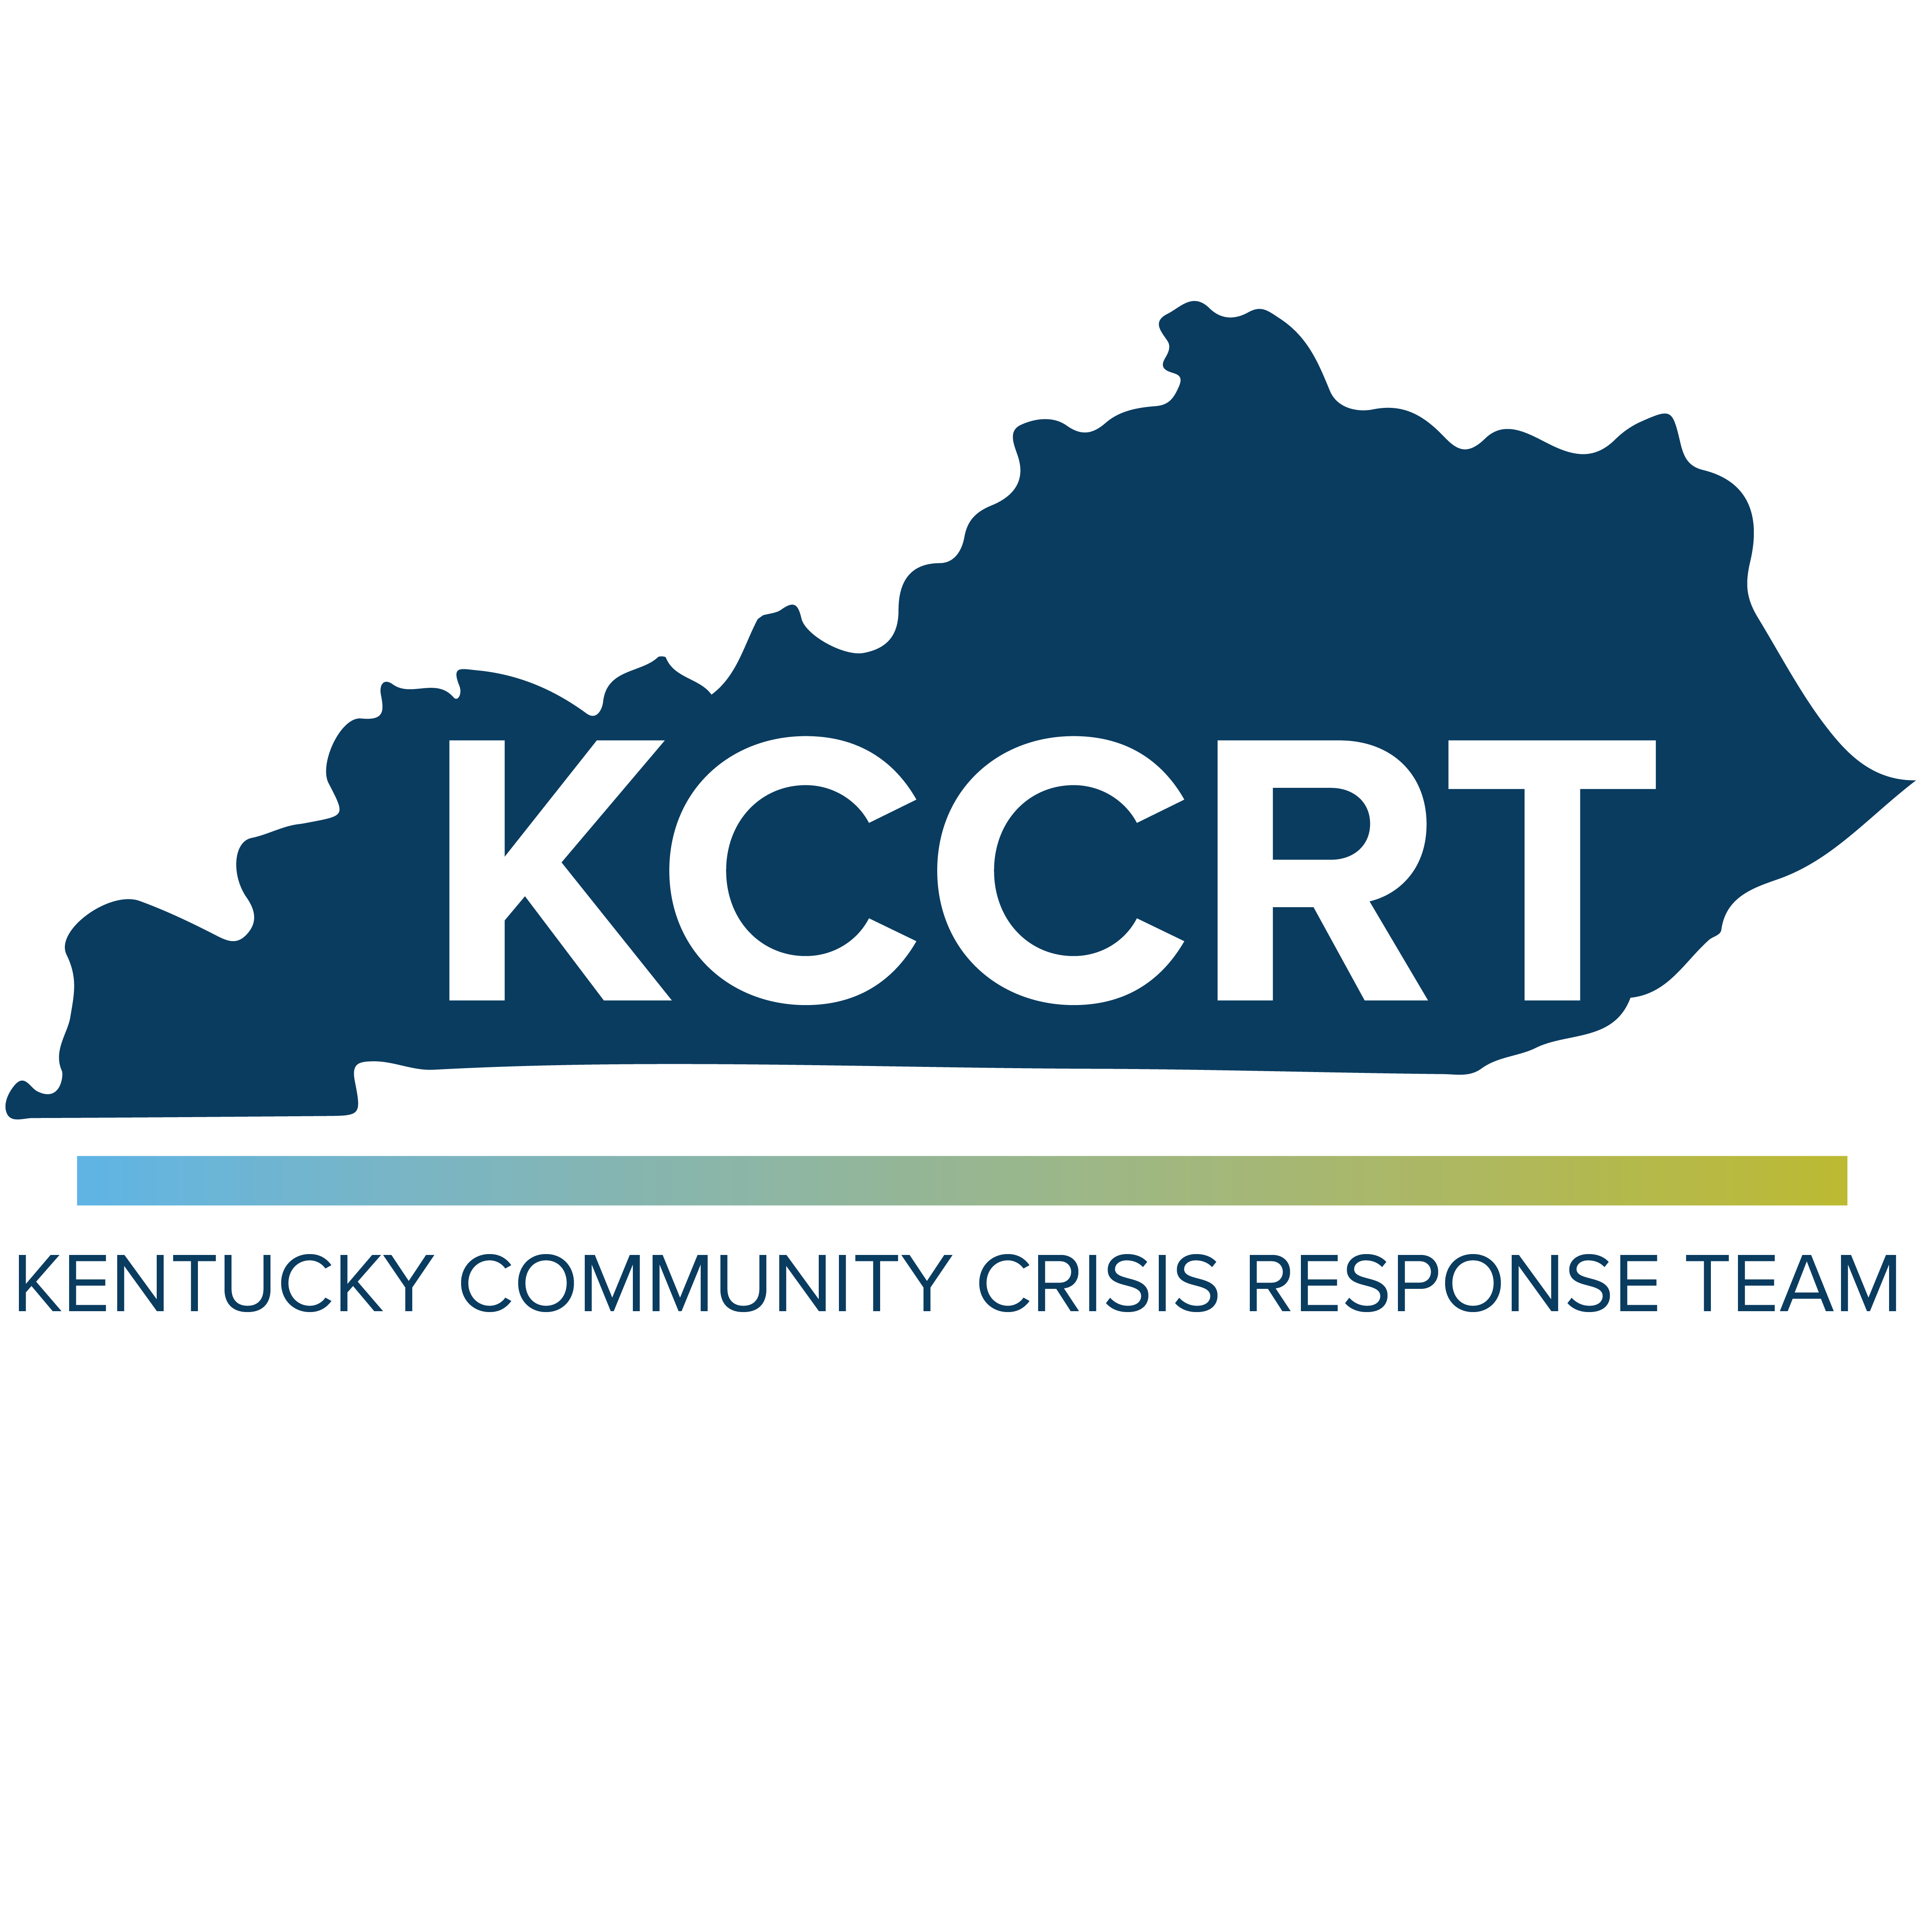 KCCRT Logo.png